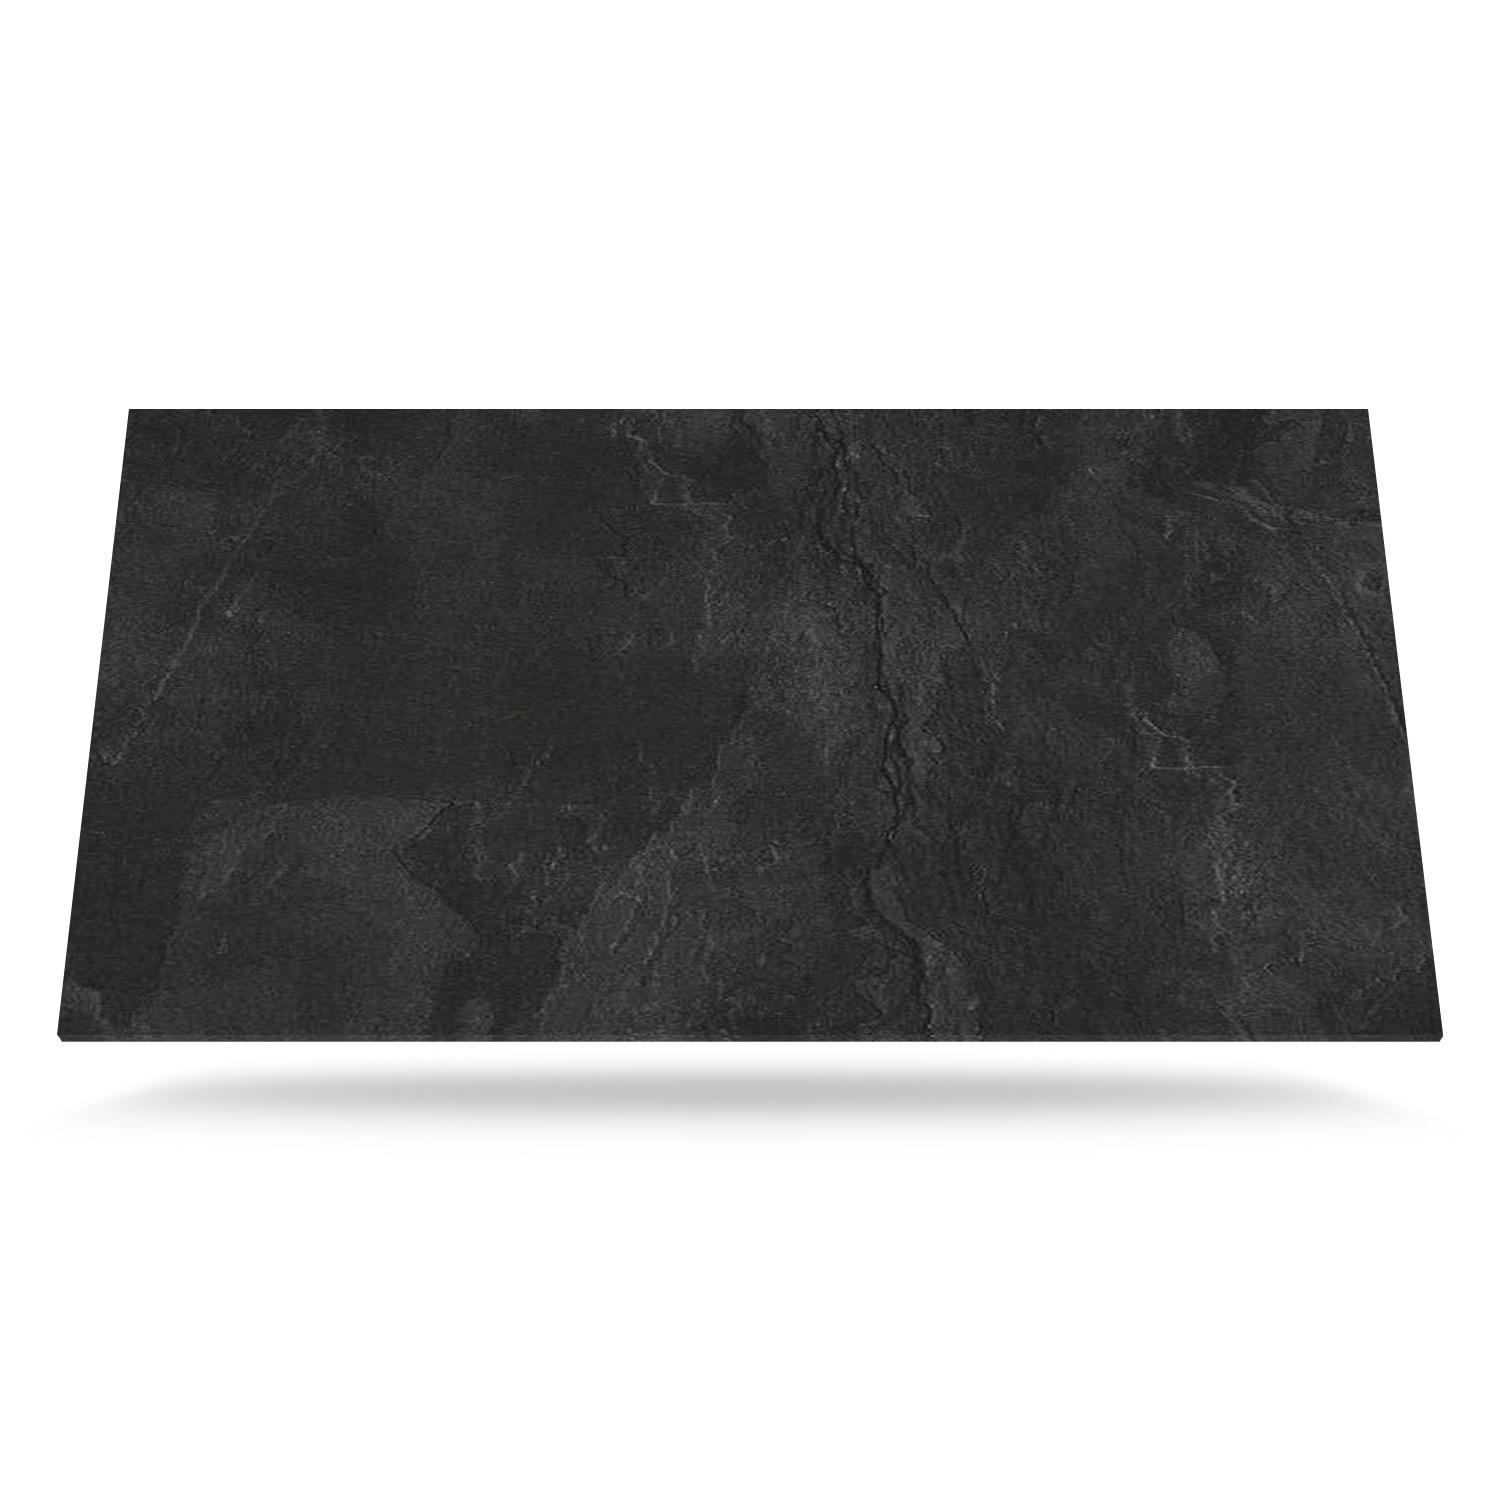 Mørkegrå Farve med skifer tekstur -  Laminat bordplade på mål - BP930